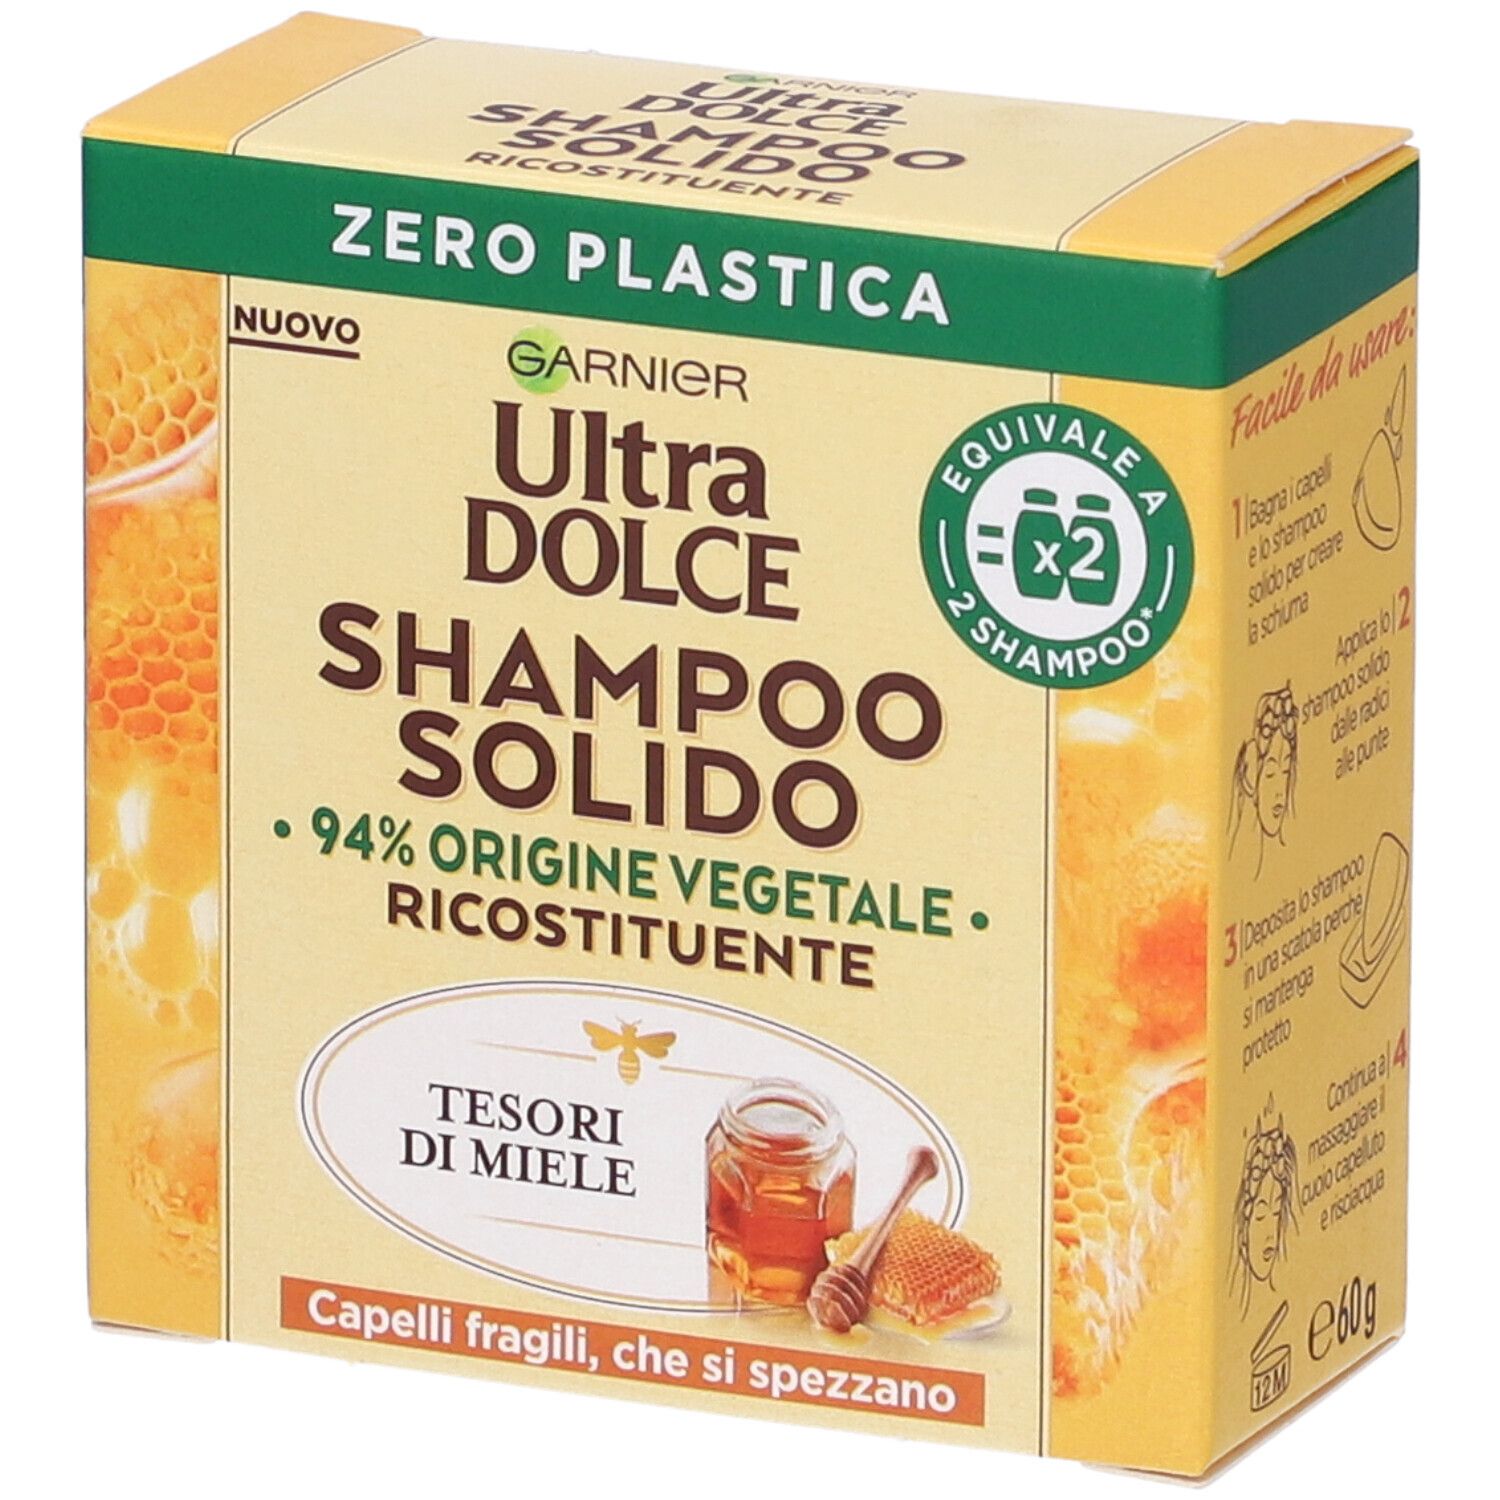 Garnier Ultra Dolce Shampoo Solido Tesori di Miele, Per Capelli Fragili che si Spezzano, Con packaging 100% ecologico plastic-free, 60 gr